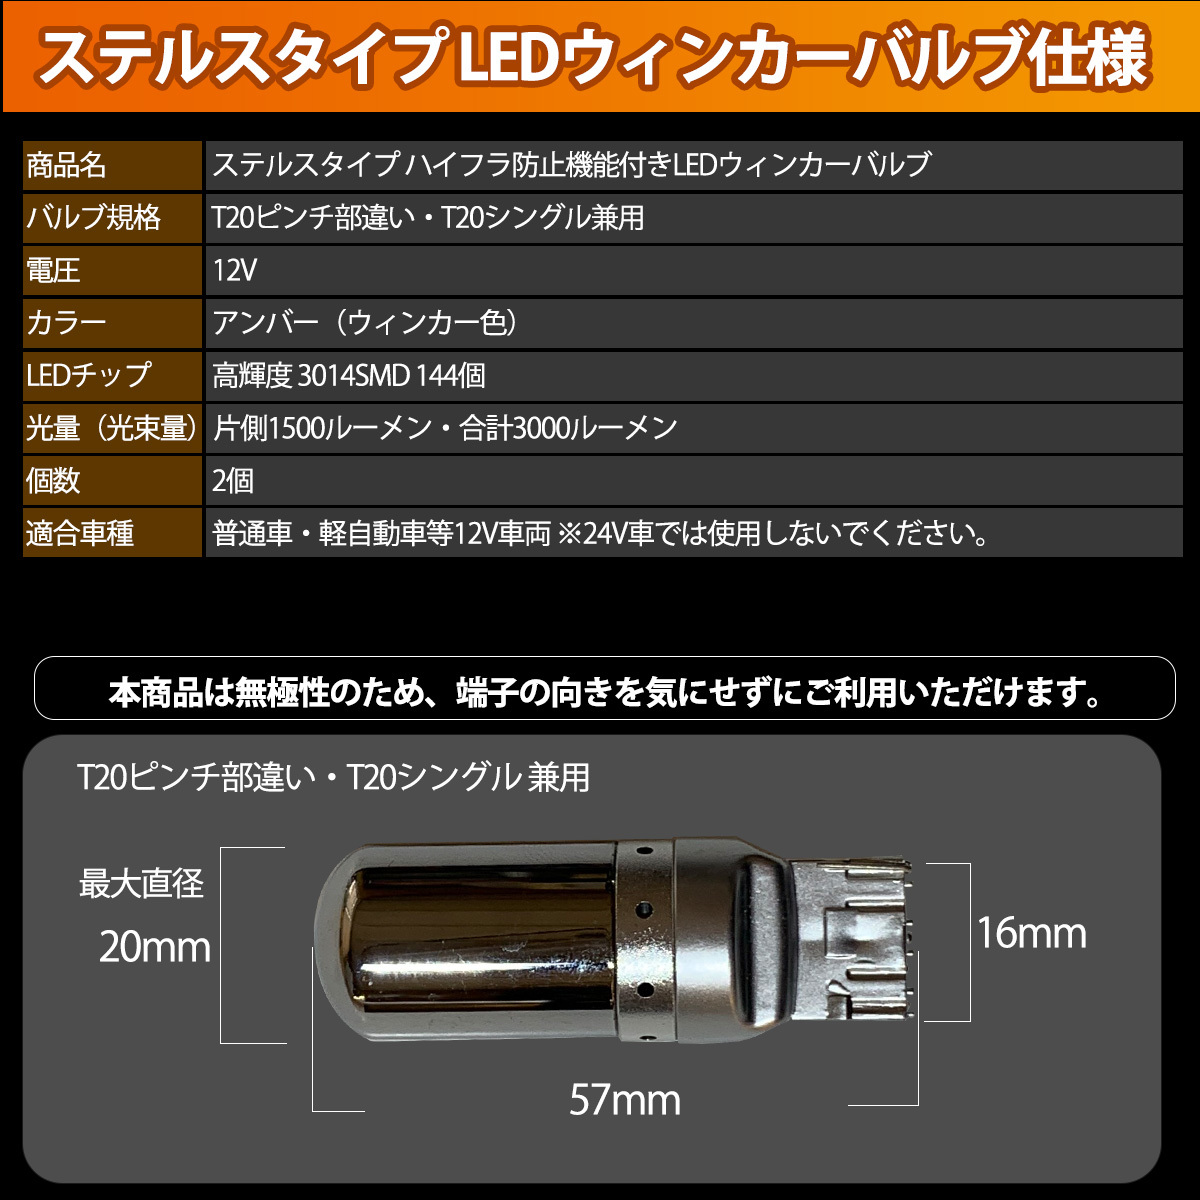 1】 MRワゴン MF22S LED ウィンカー バルブ T20 ハイフラ防止 ステルス 抵抗器 内蔵 2個セット